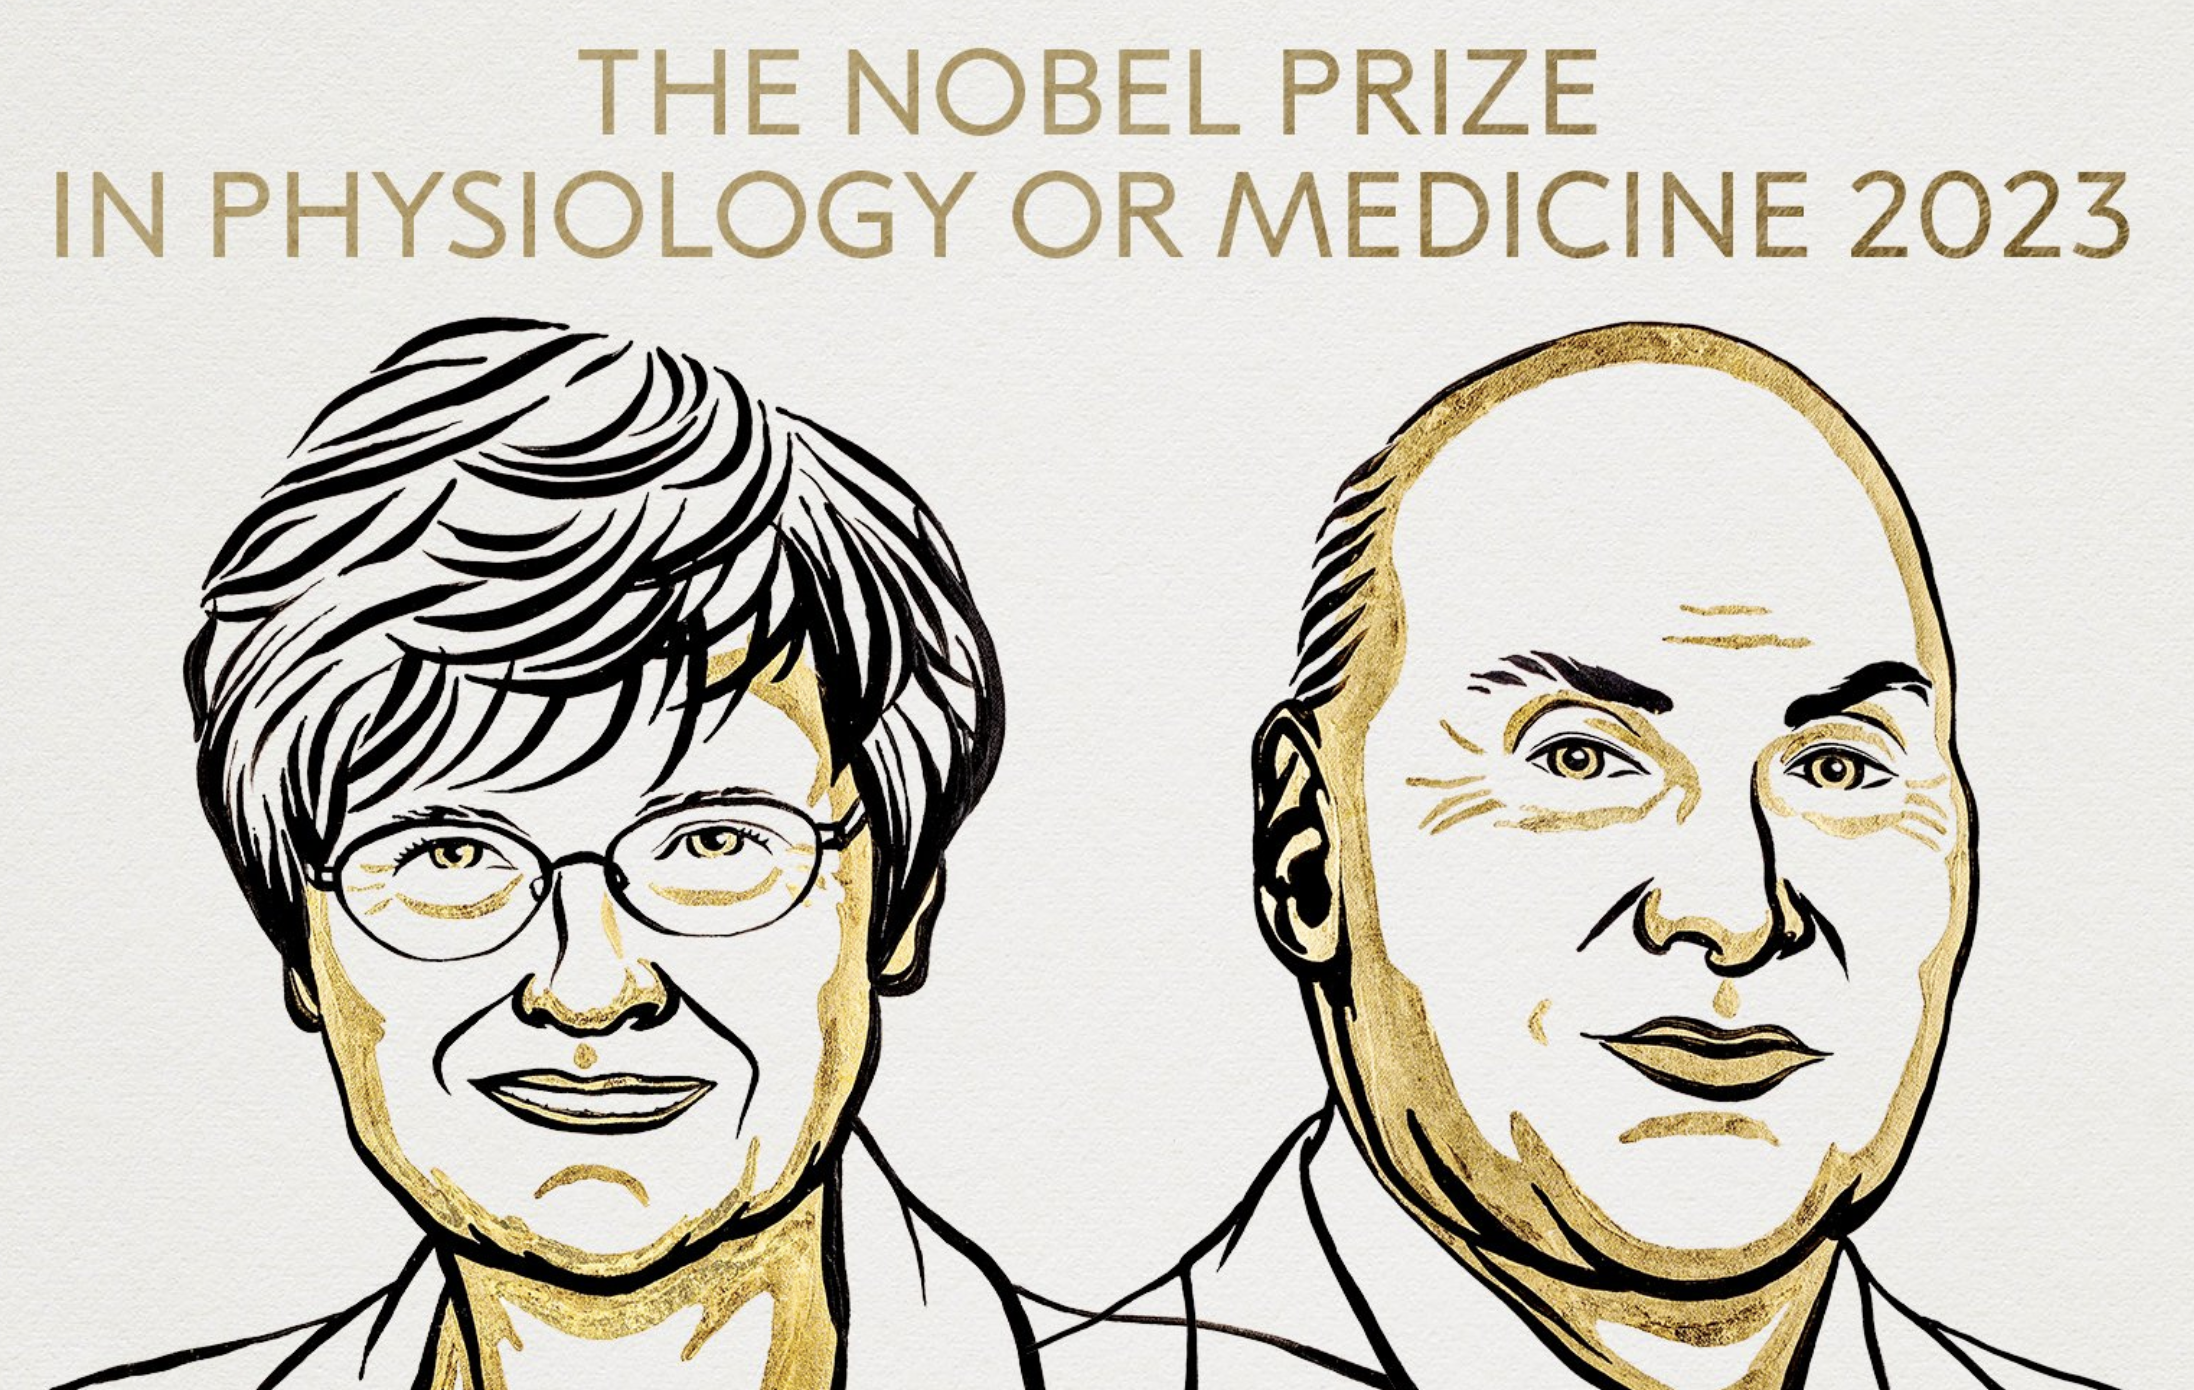 Un premio Nobel a la ciencia, la salud y la vida, y contra el negacionismo